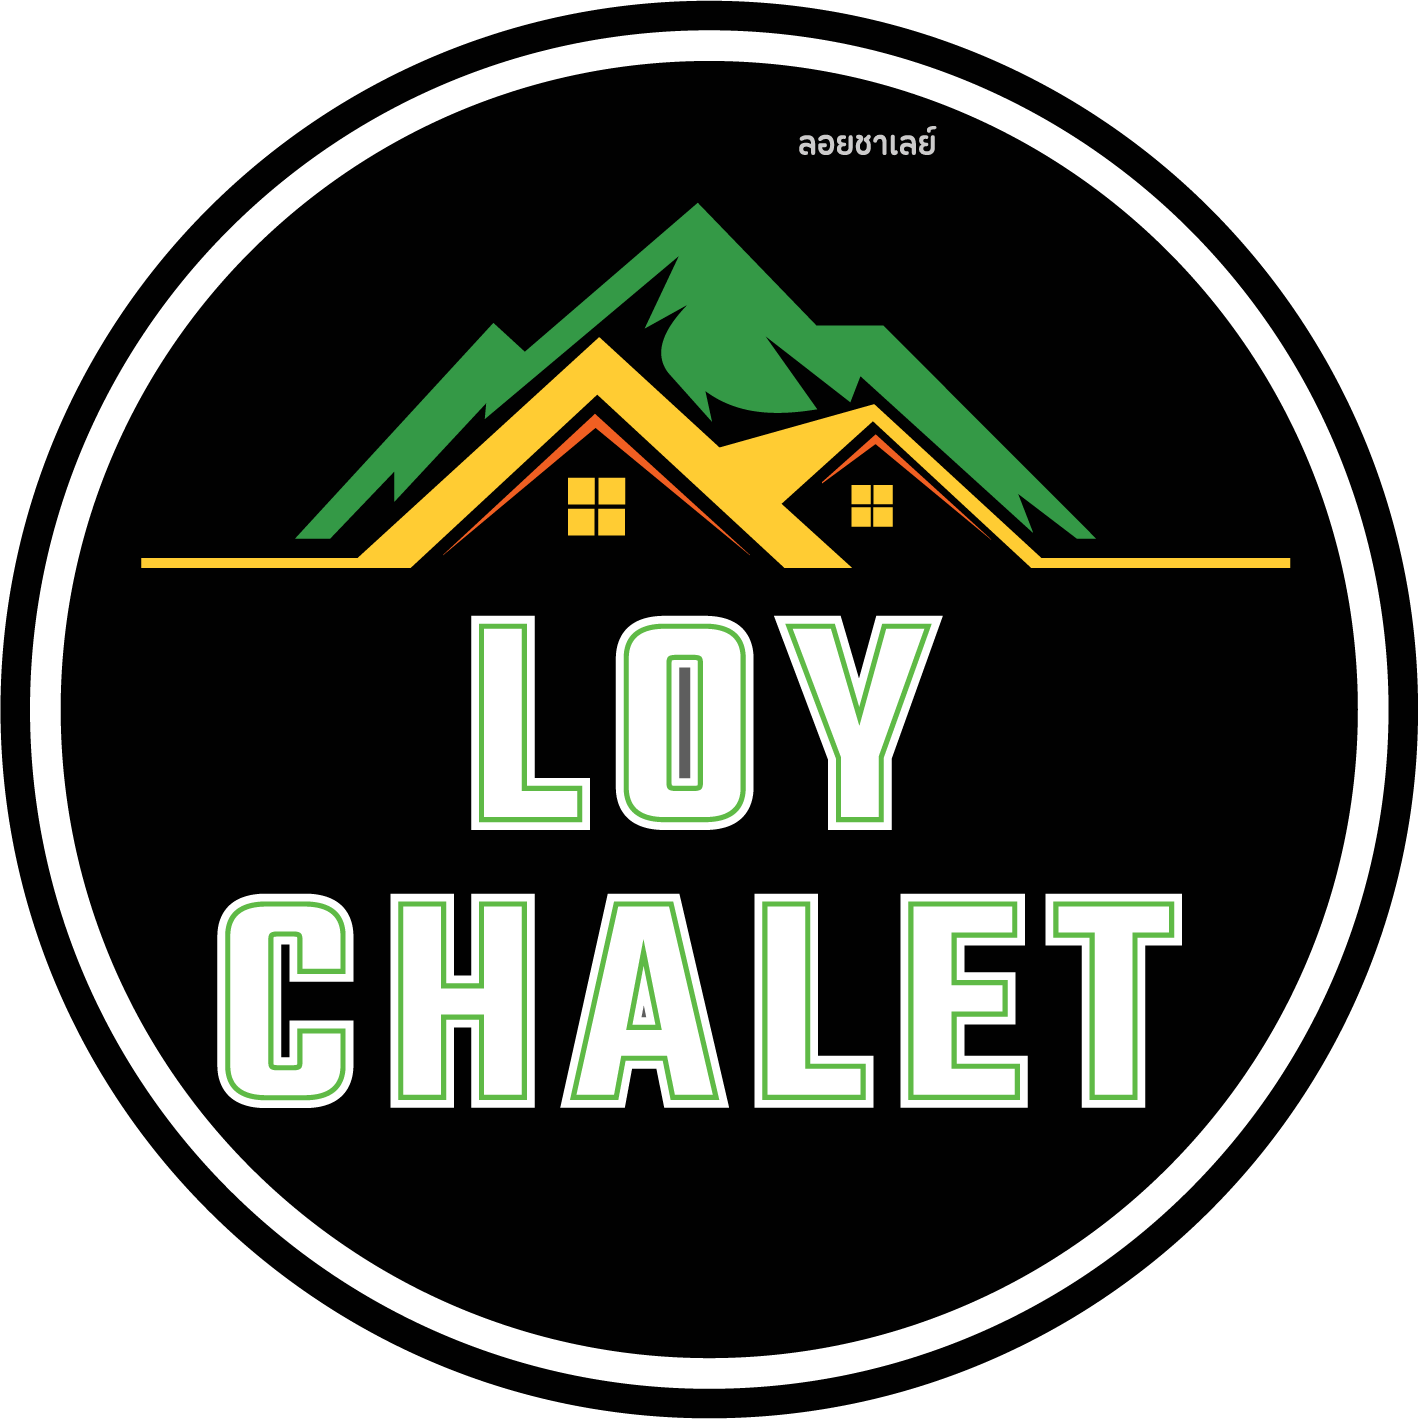 Loy Chalet